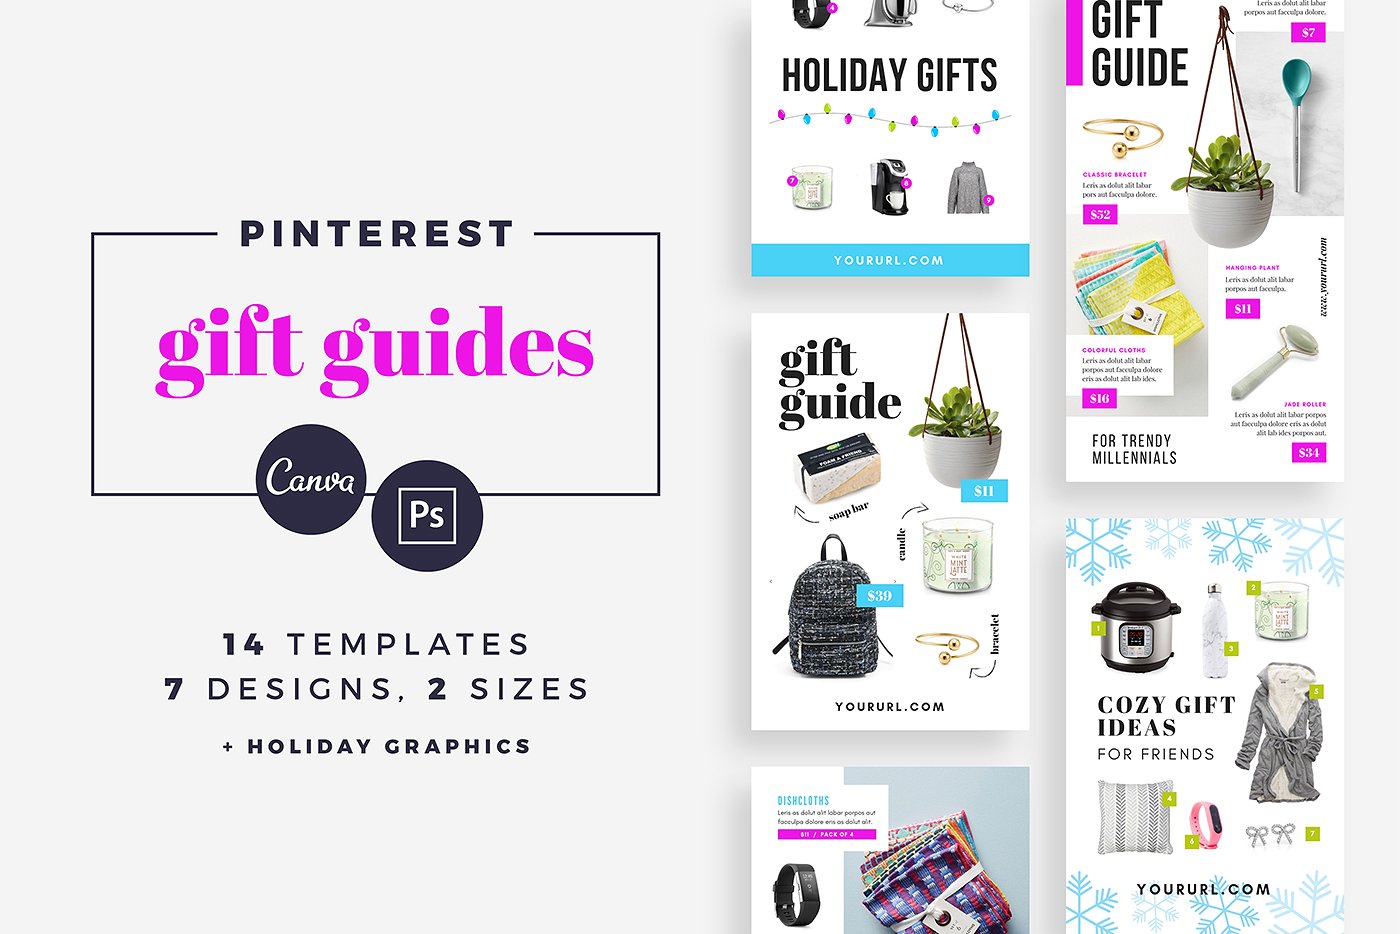 礼品指南社交媒体模板第一素材精选 Gift Guide Pinterest Templates [psd]插图